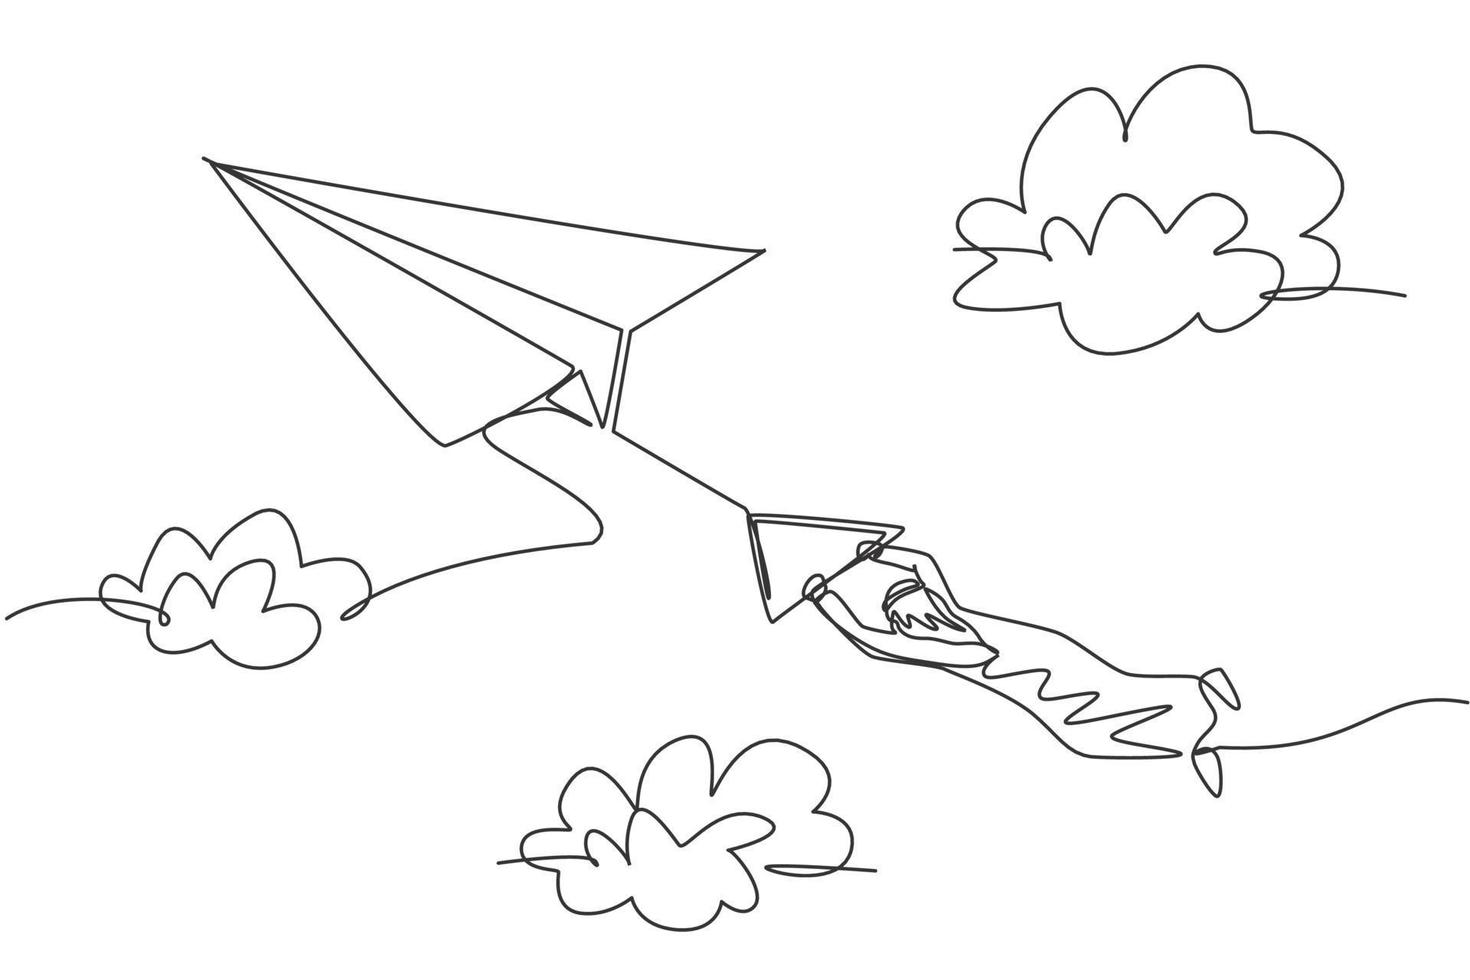 contínuo um desenho de linha de jovem trabalhador árabe segurando um avião de papel voando no céu. conceito de metáfora minimalista de desafio de negócios. ilustração gráfica de vetor de desenho de linha única